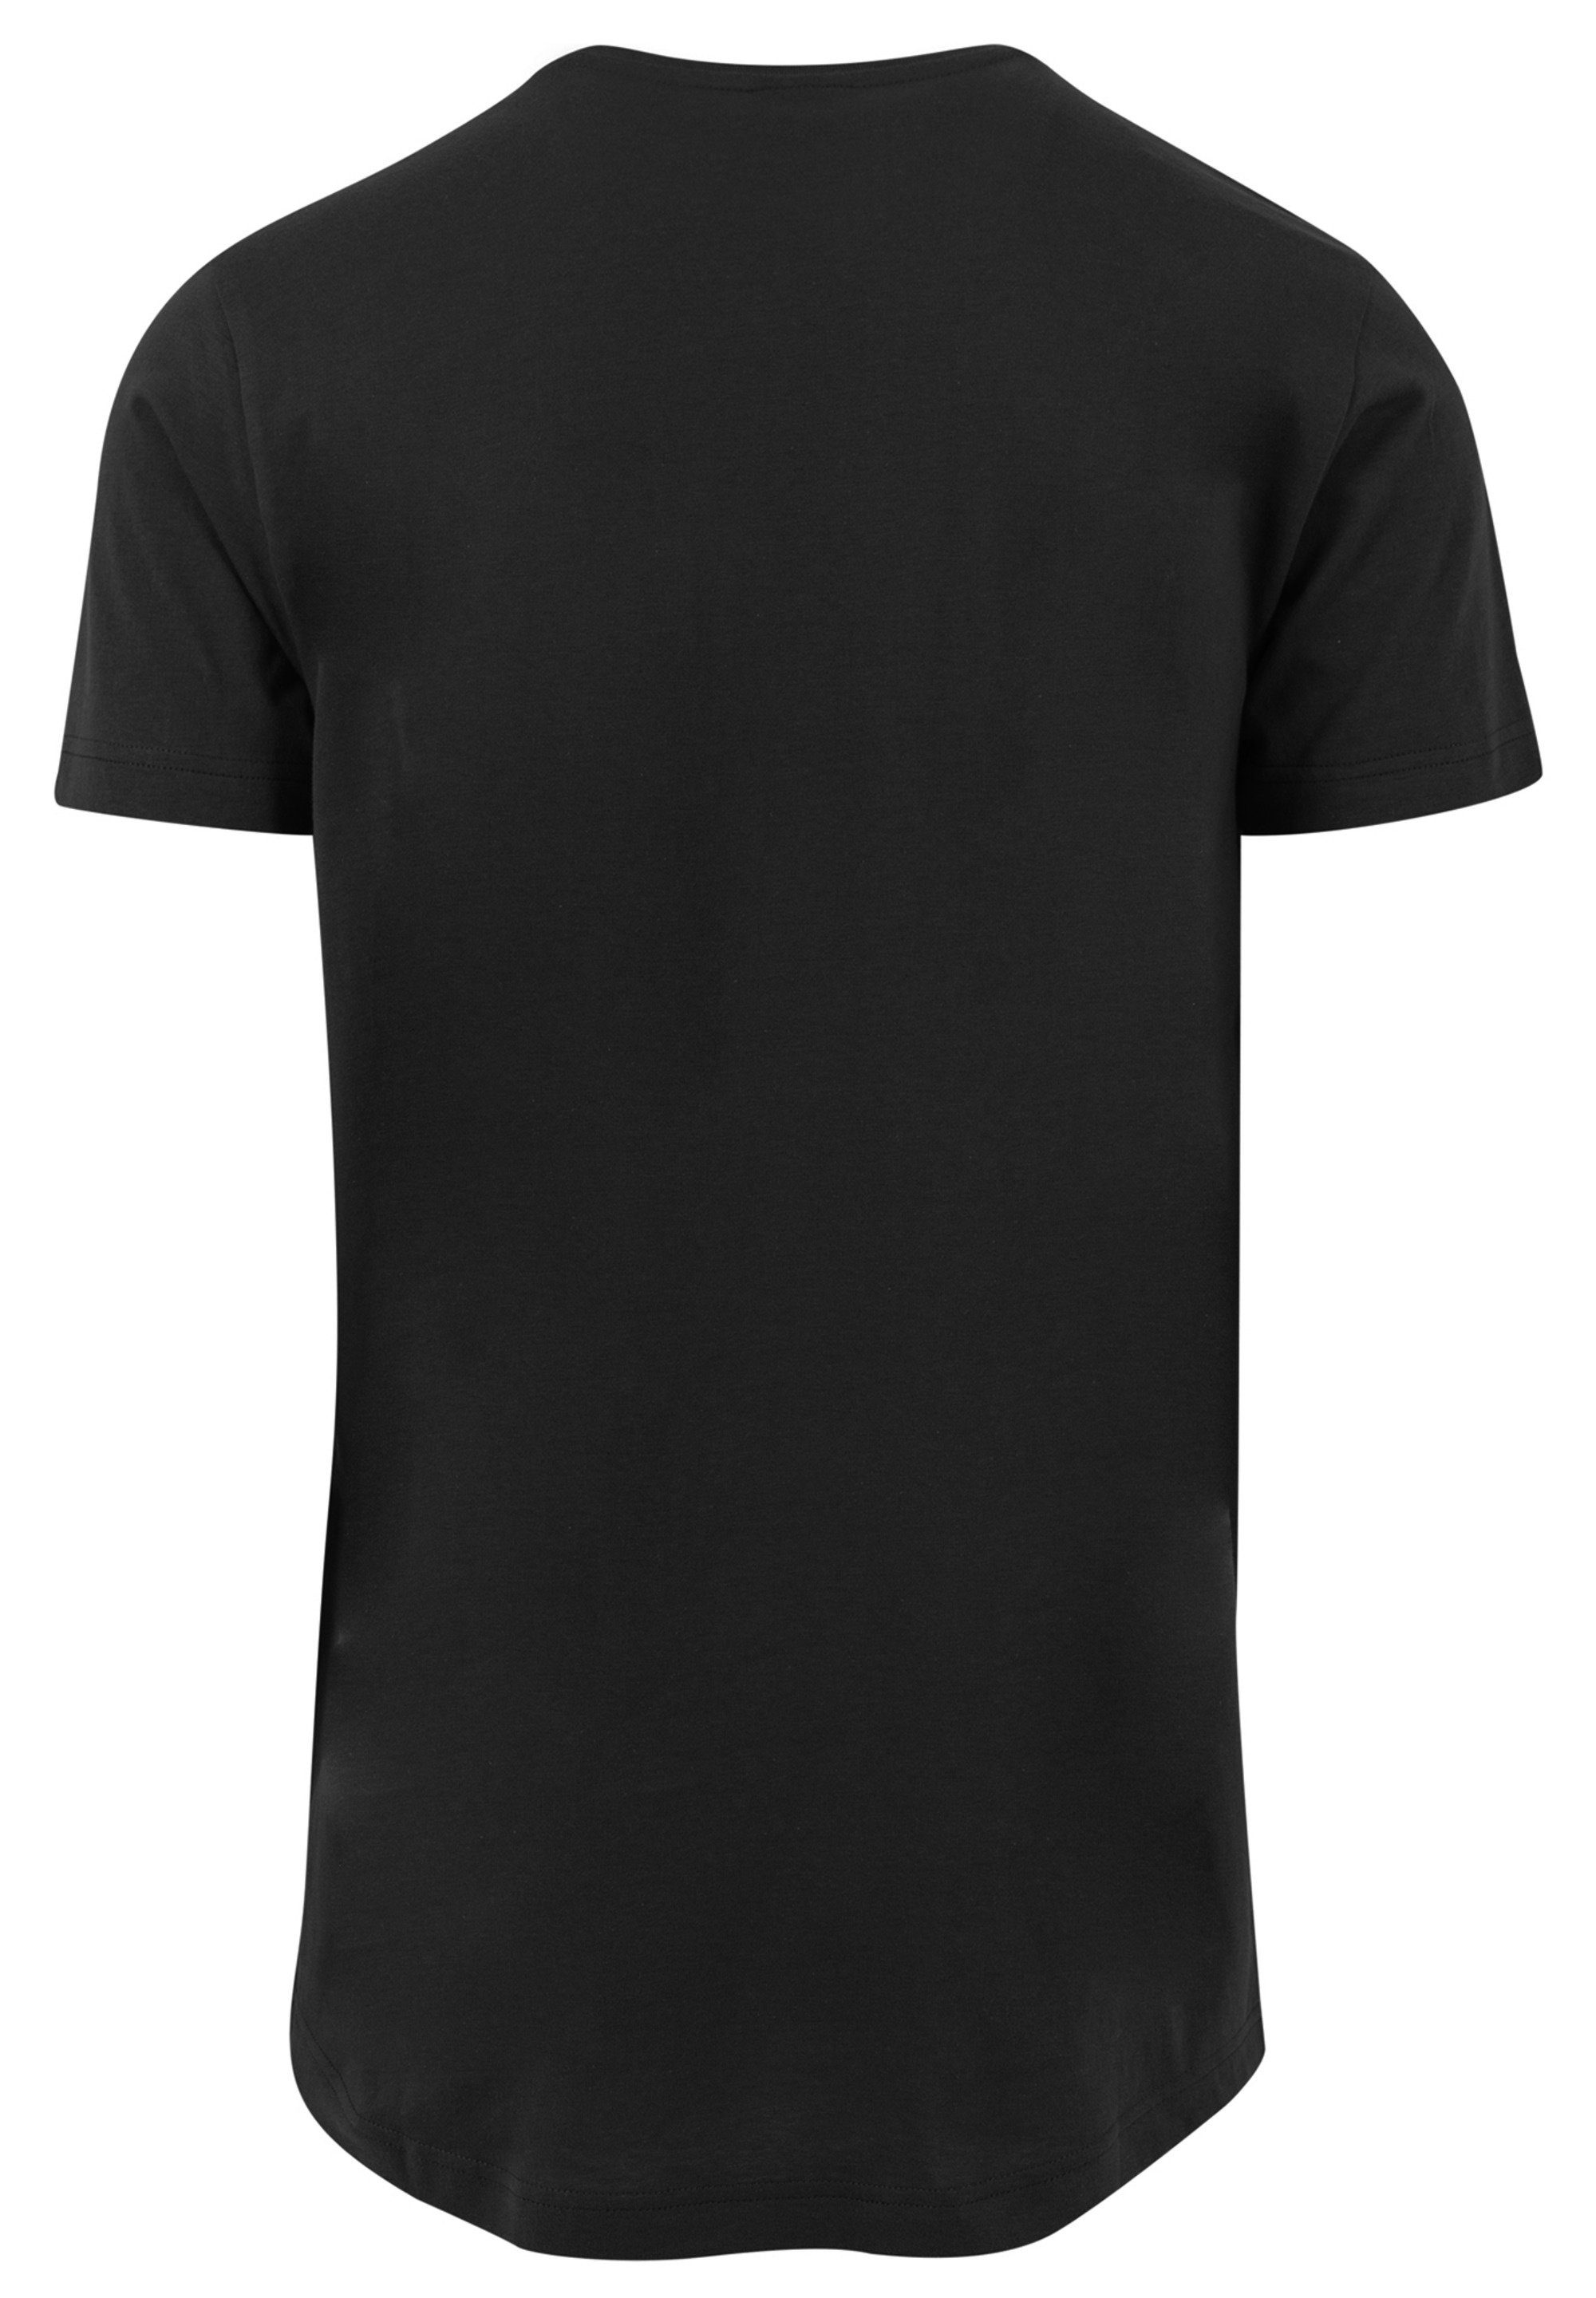 F4NT4STIC T-Shirt NASA Classic Herren,Premium Black Merch,Lang,Longshirt,Bedruckt Mondlandung